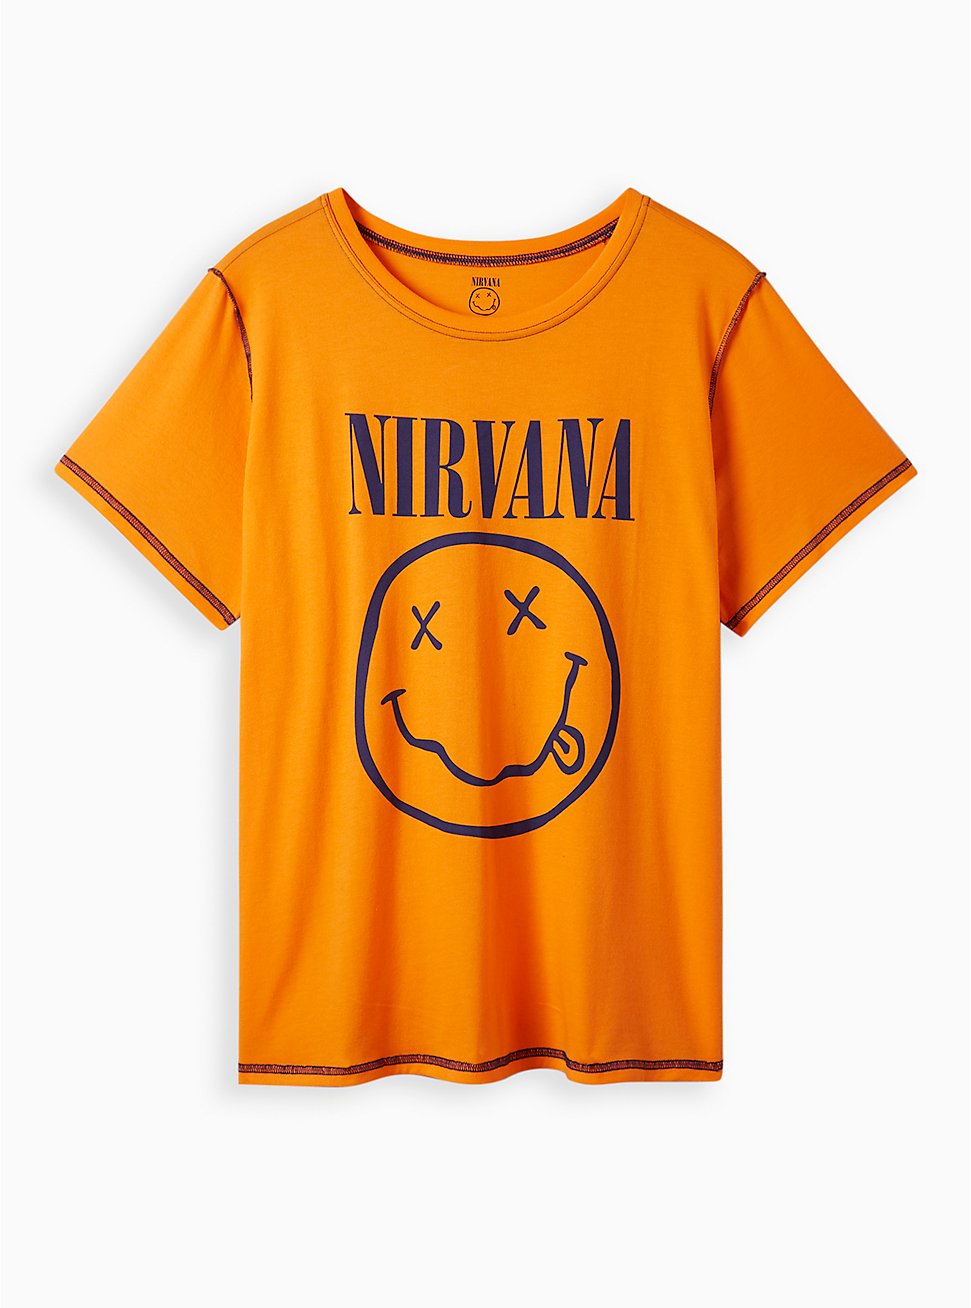 Plus Size Nirvana Slim Fit Seam Crew Tee - Cotton Orange, ORANGE, hi-res